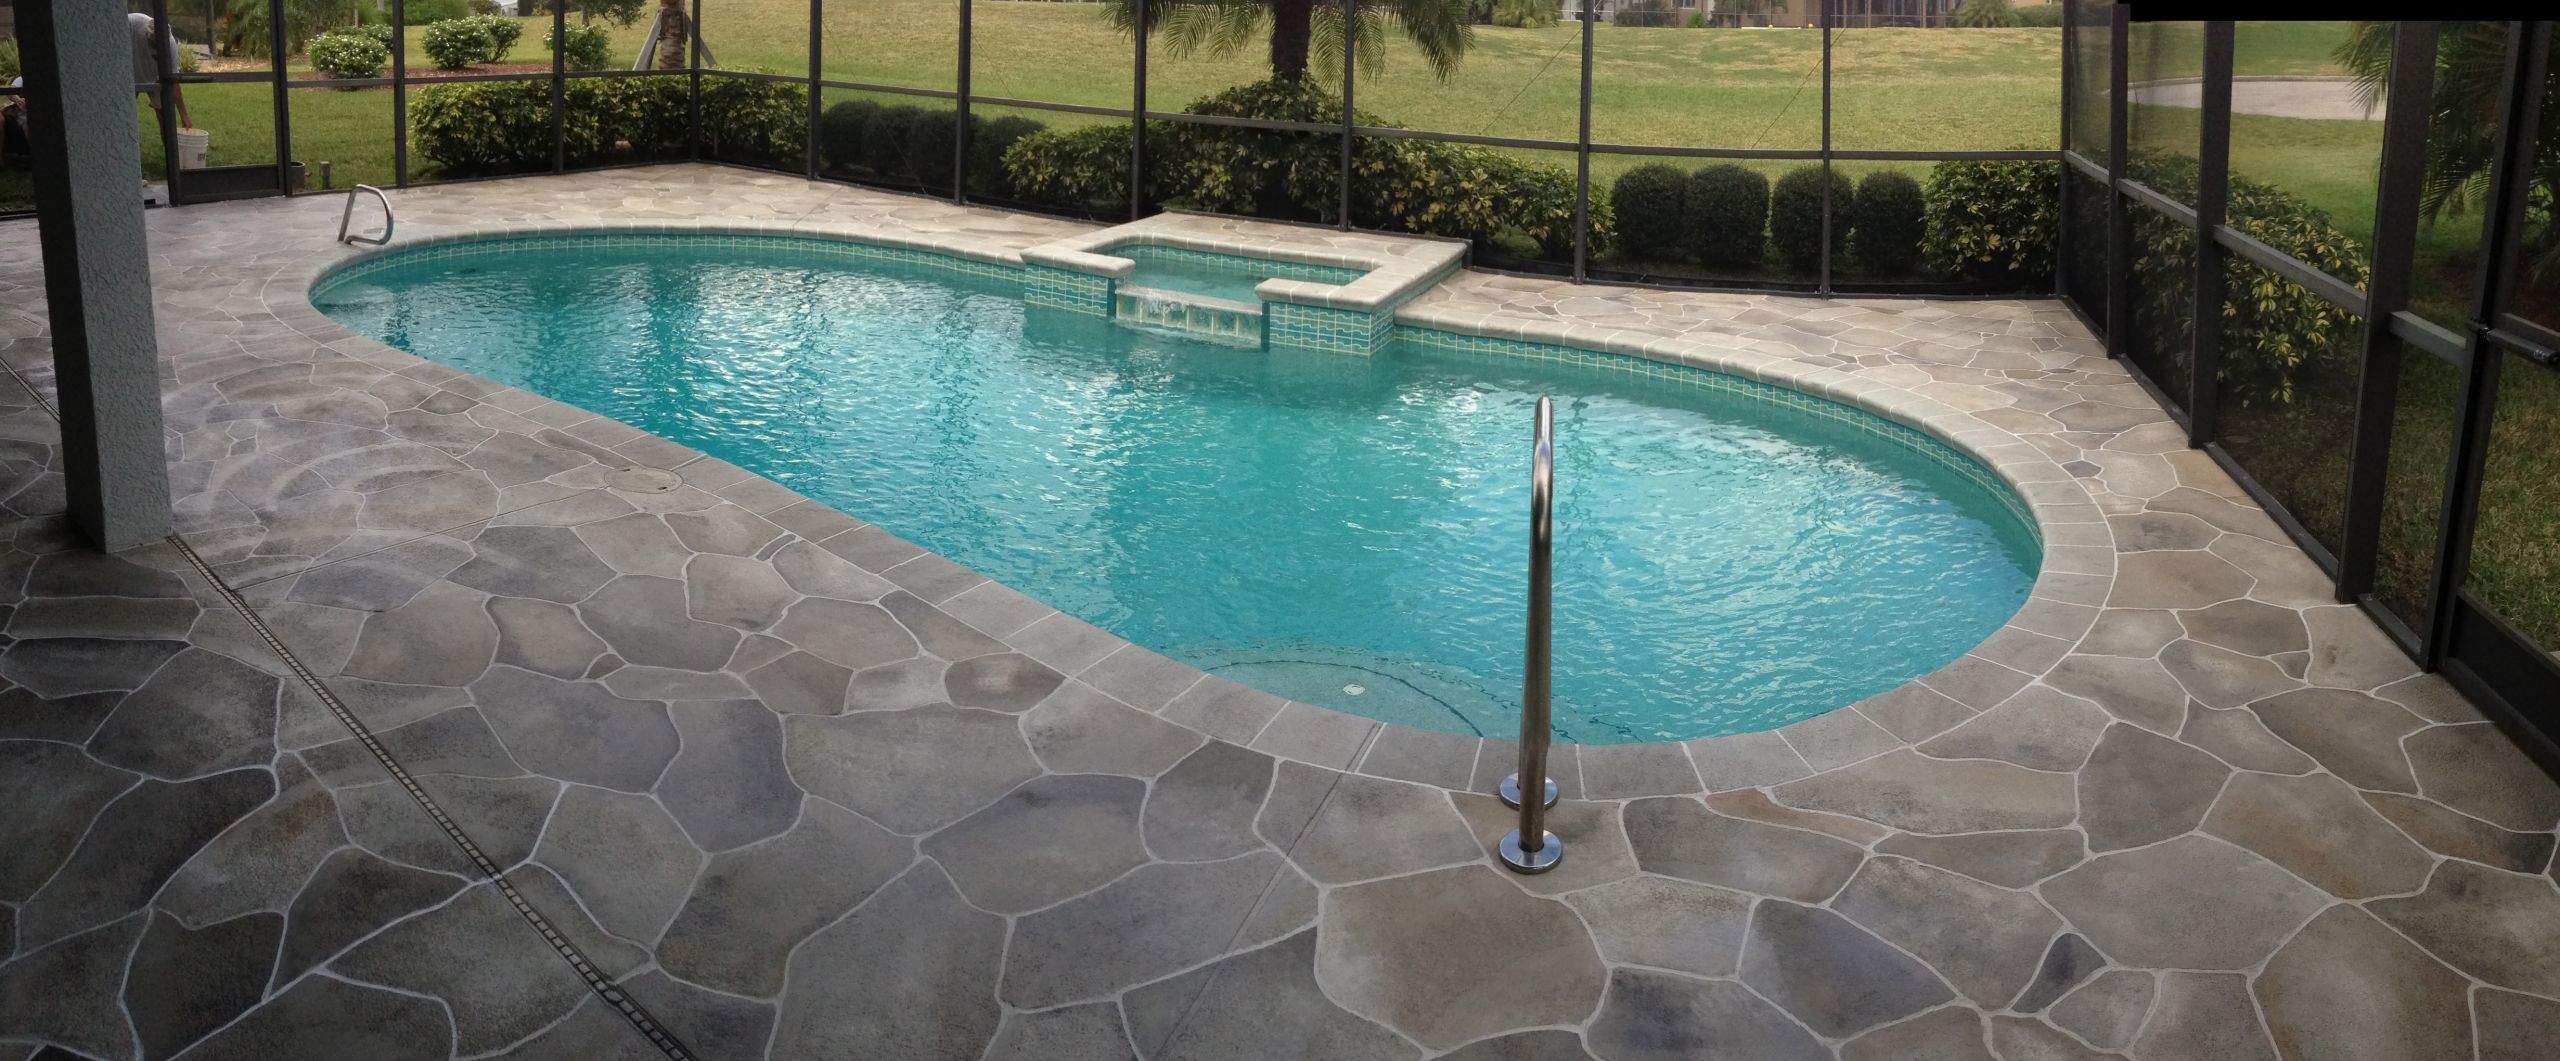 Concrete Pool Deck Paint Ideas
 Concrete Designs Florida